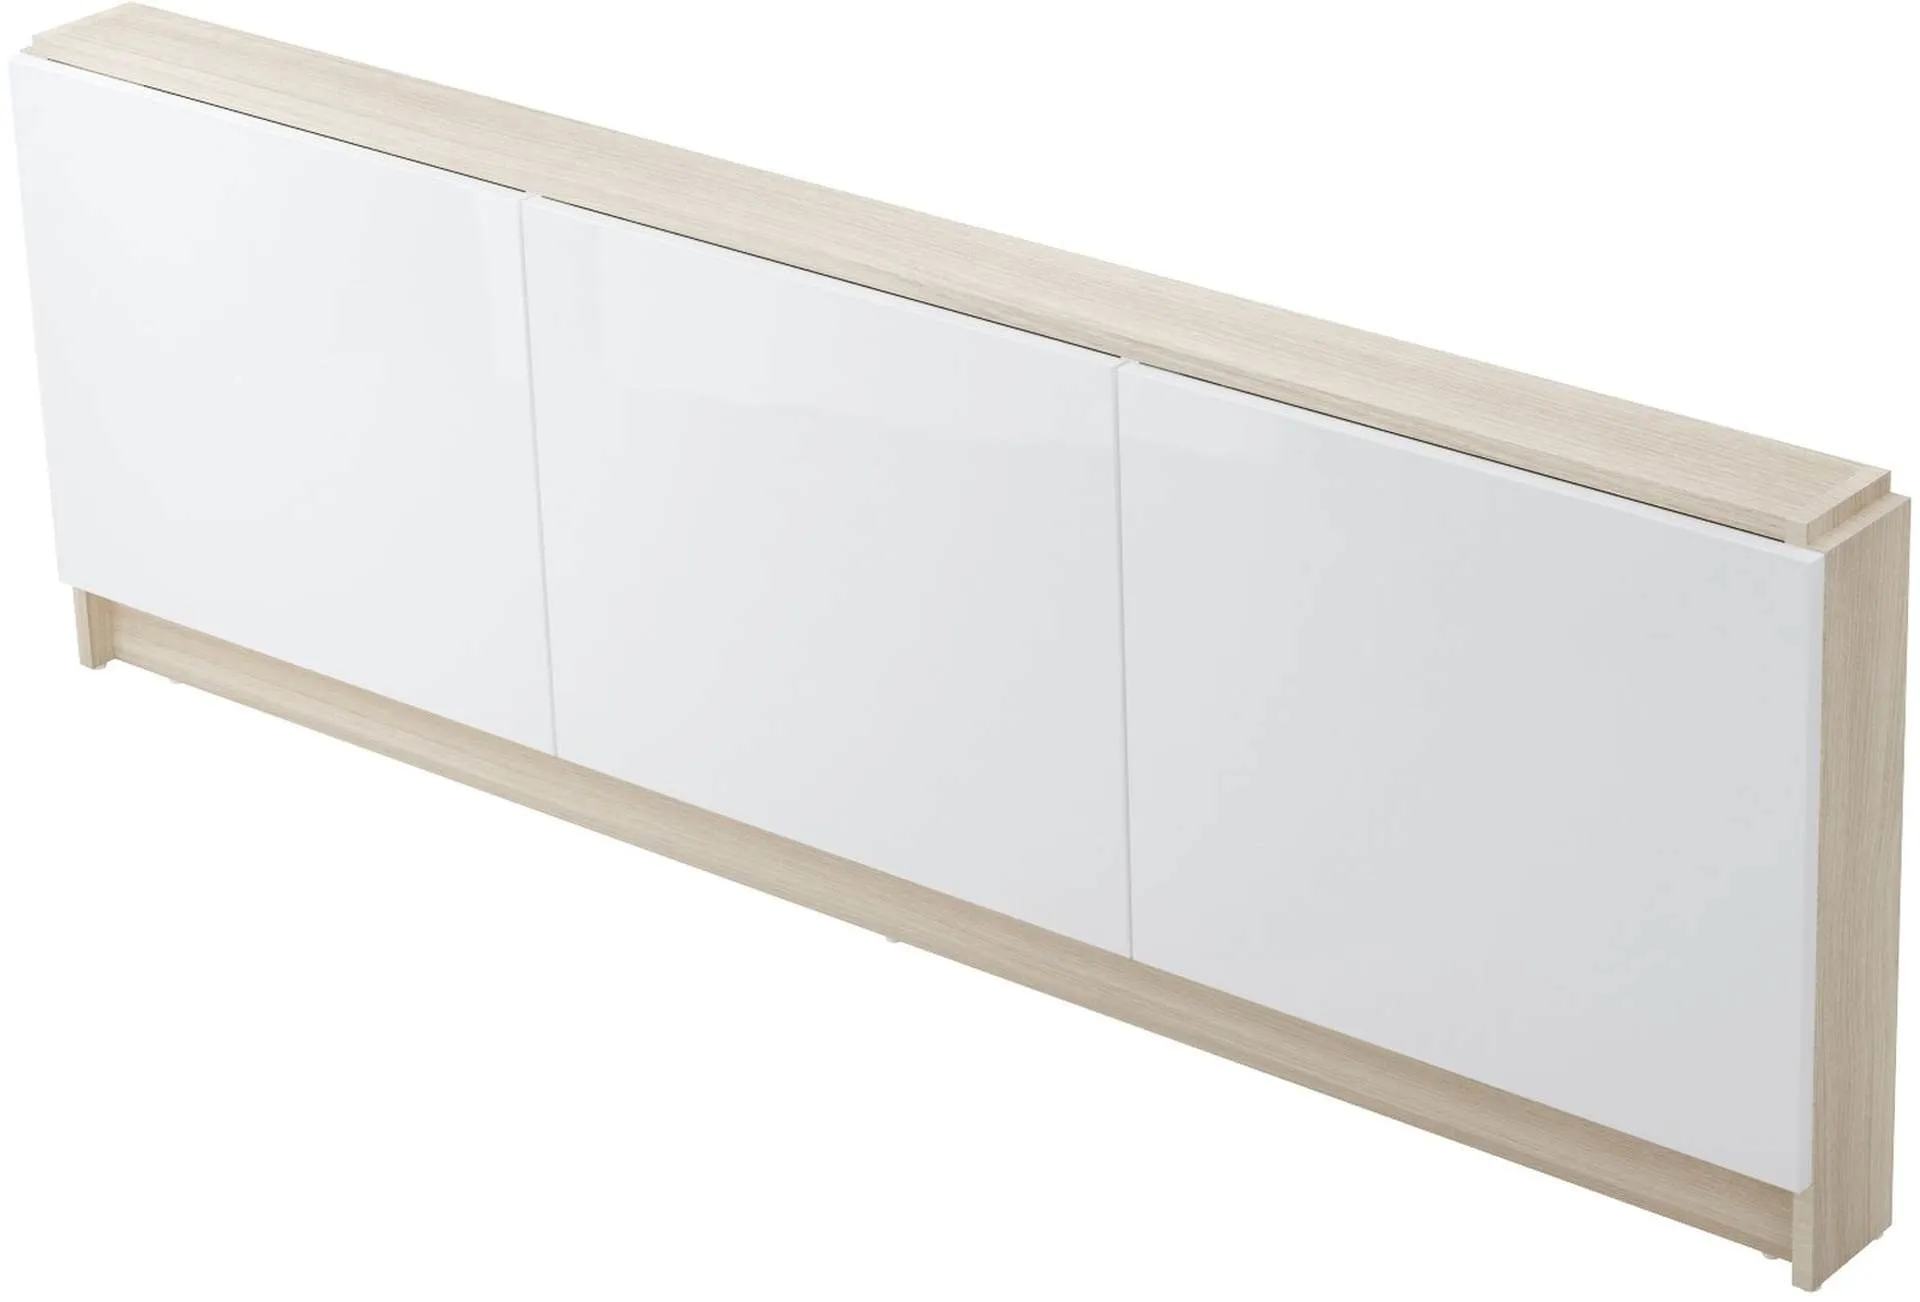 Panel meblowy do wanny 170 cm Cersanit Smart biały S568-026